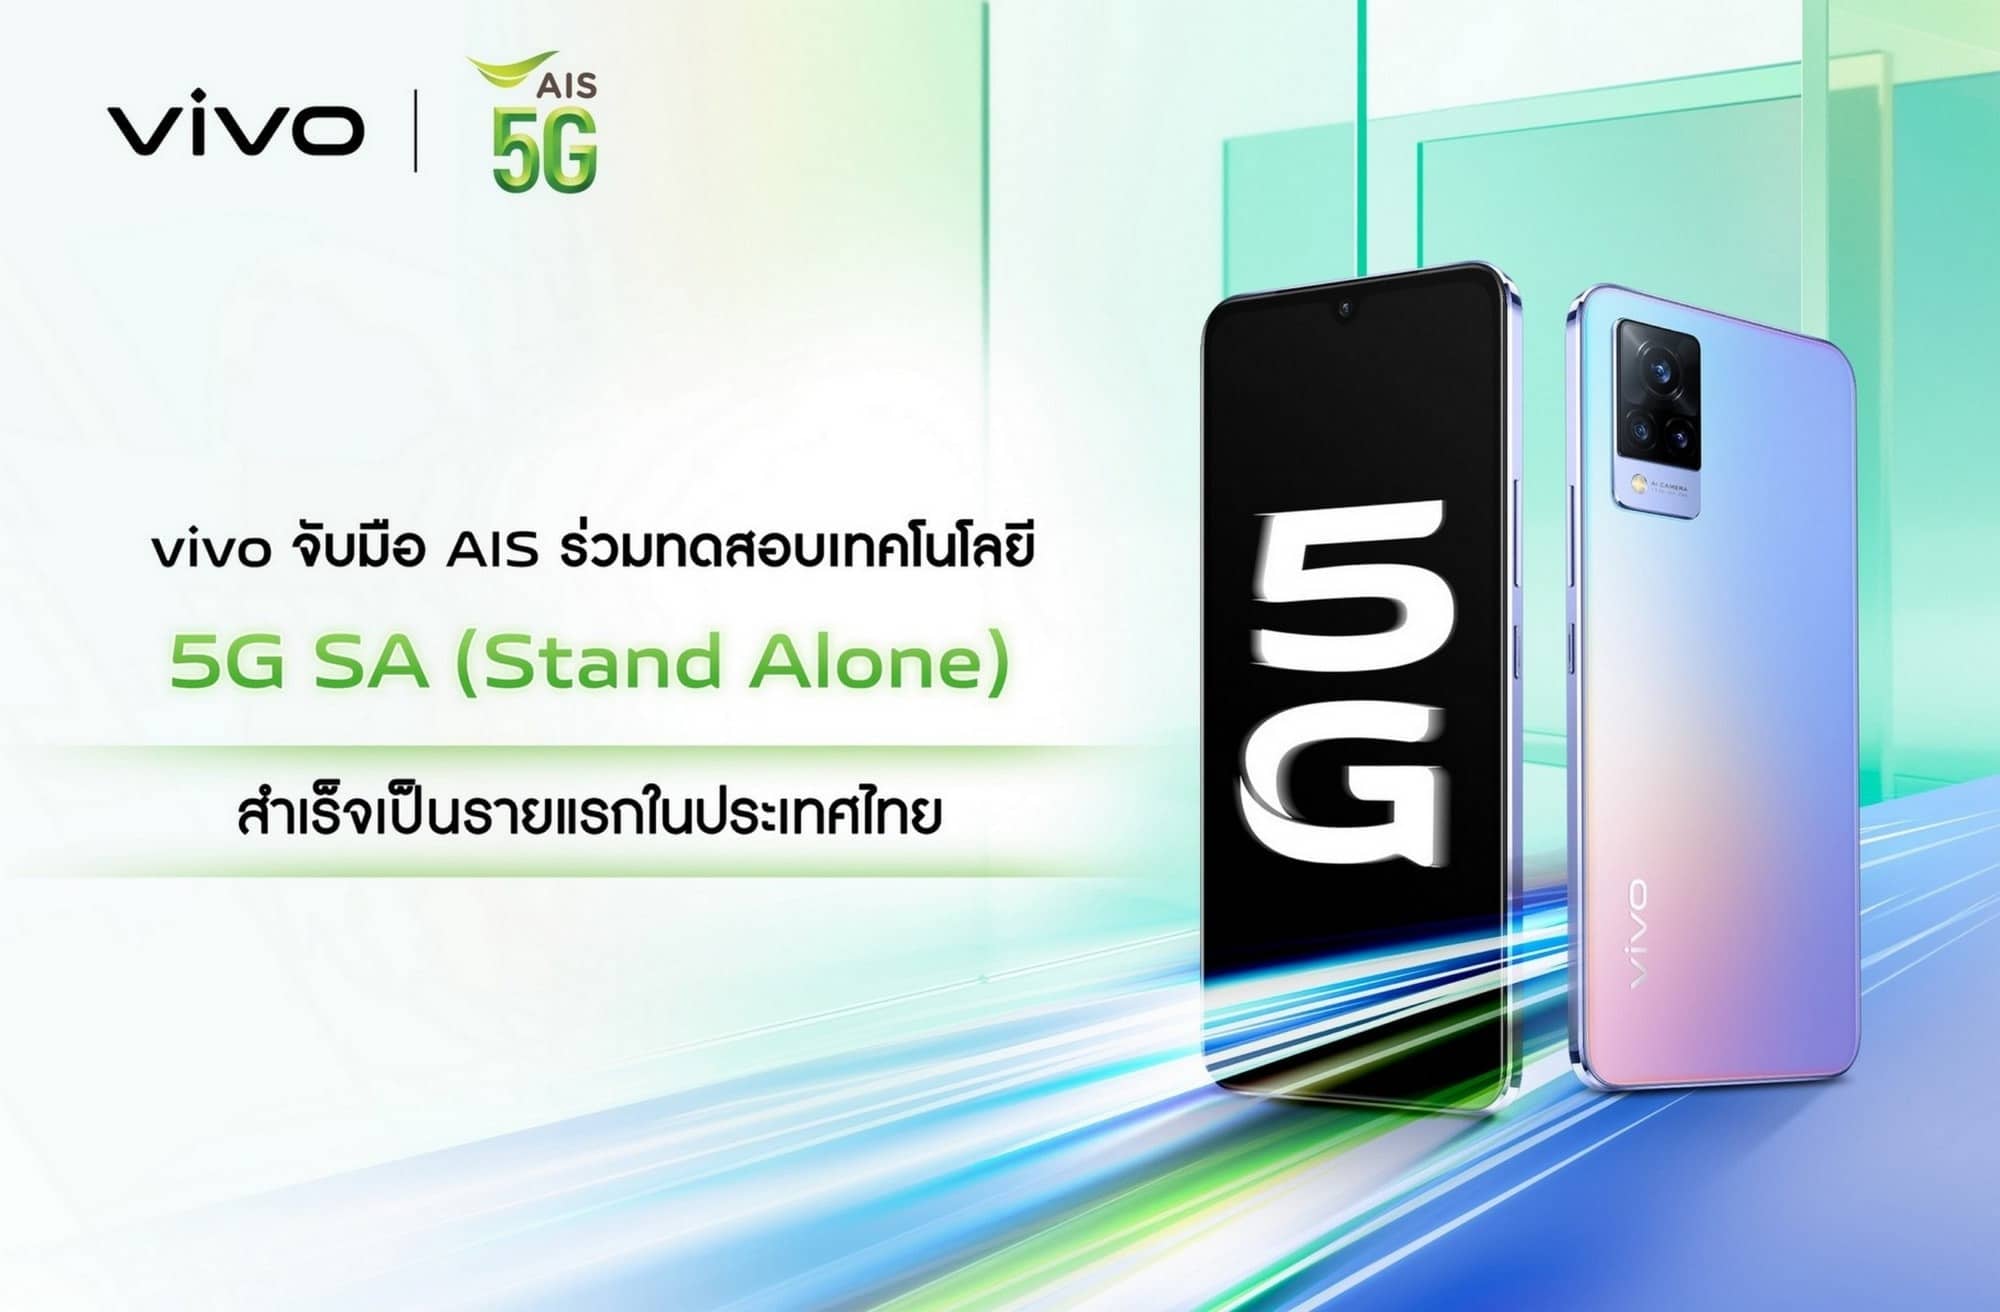 vivo จับมือ AIS ร่วมทดสอบเทคโนโลยี 5G SA (Stand Alone) สำเร็จเป็นรายแรกในประเทศไทย 1